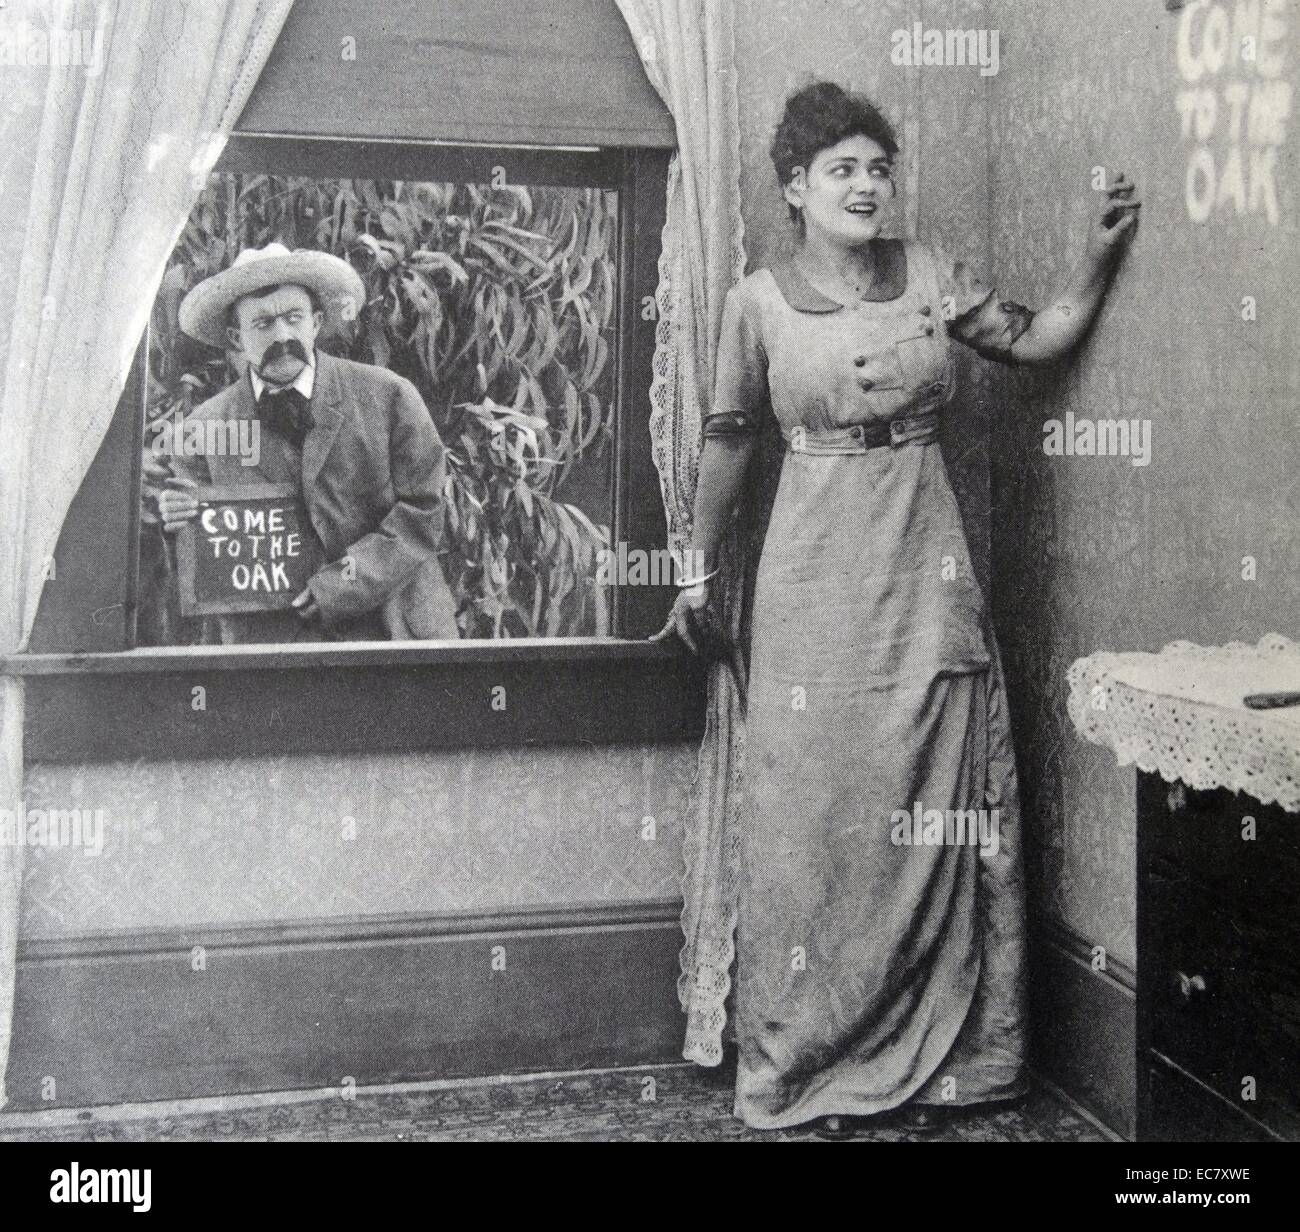 Une cession dans un film intitulé 'malédictions ! Ils ont fait remarquer', 1914. Les mots 'venez au chêne' show sur le mur. Banque D'Images